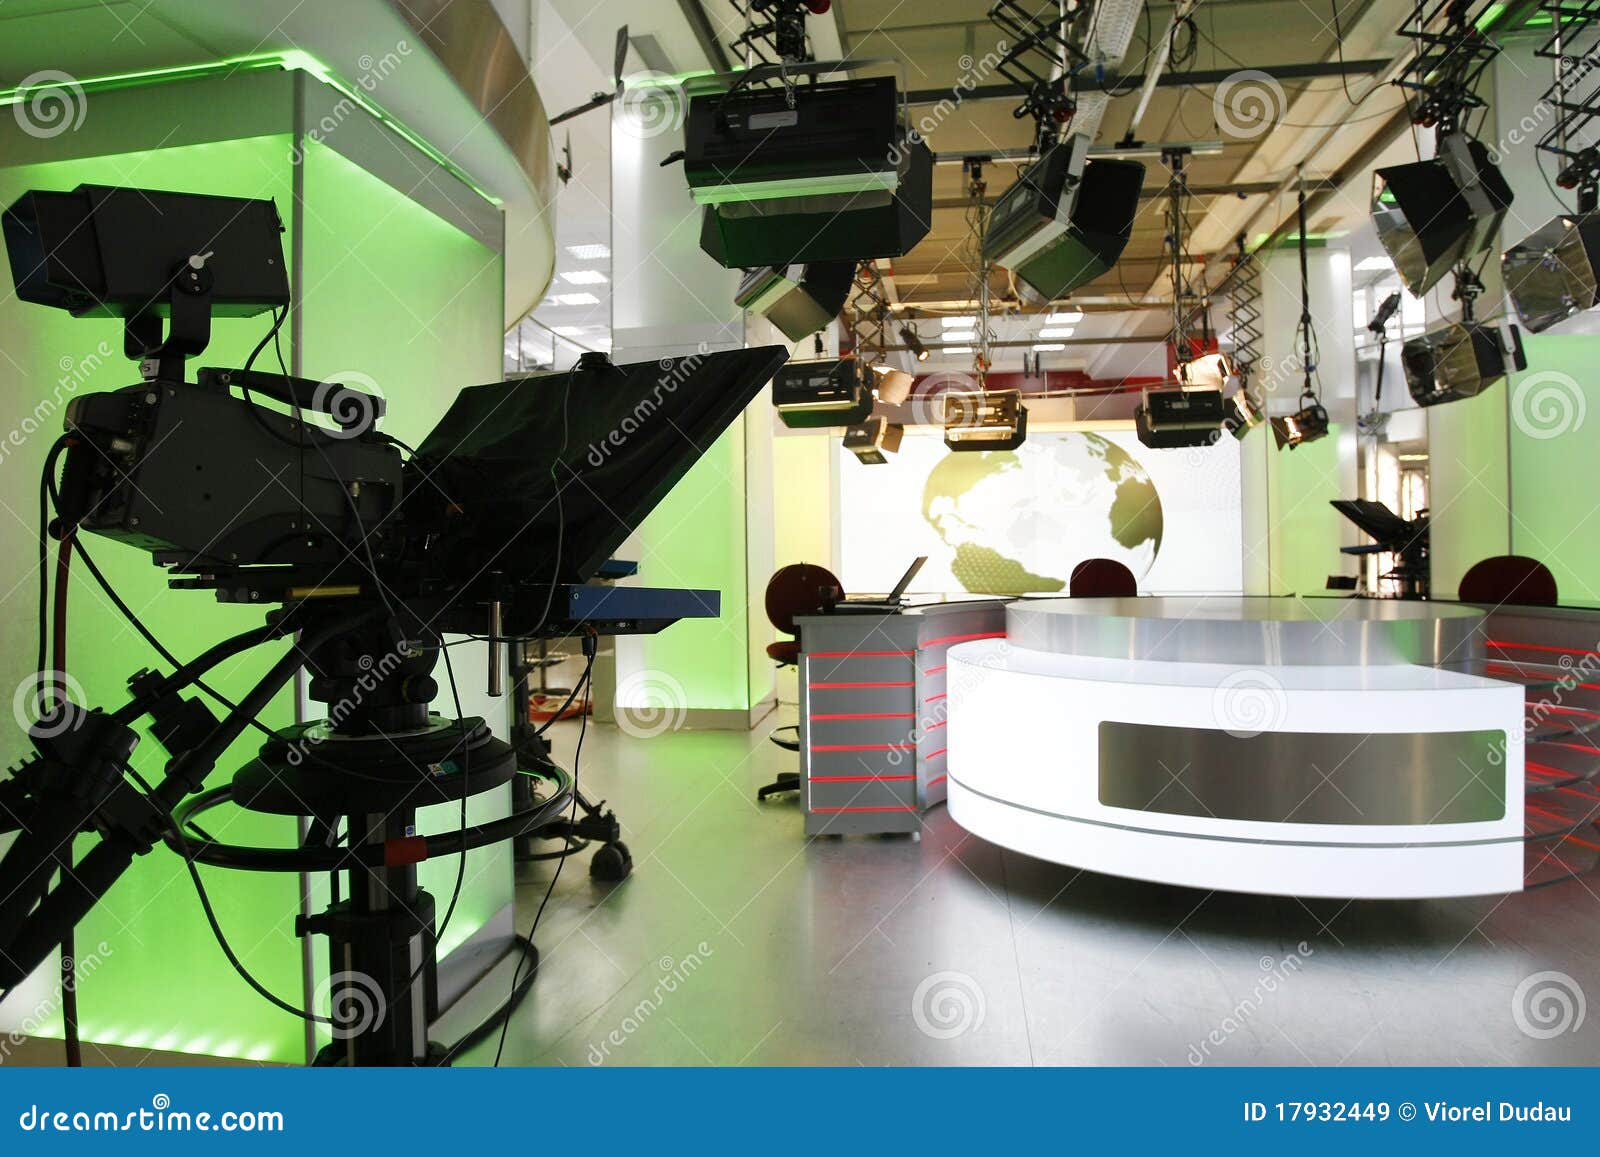 tv news studio setup